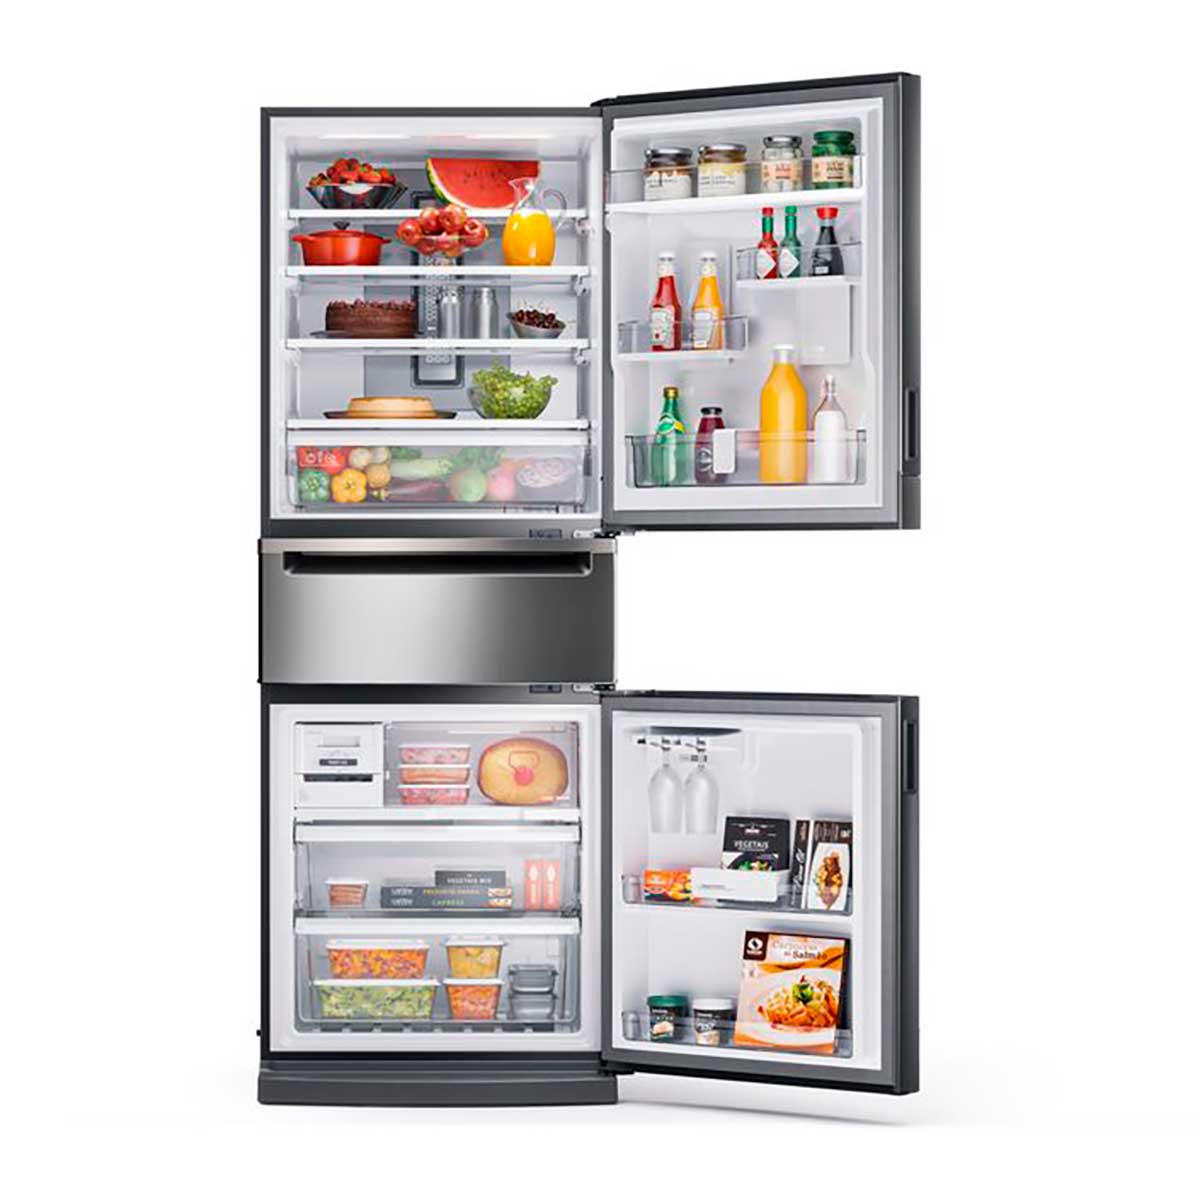 refrigerador-brastemp-frost-free-3-portas-inverse-bry59bk-419-l-inox-220v-4.jpg